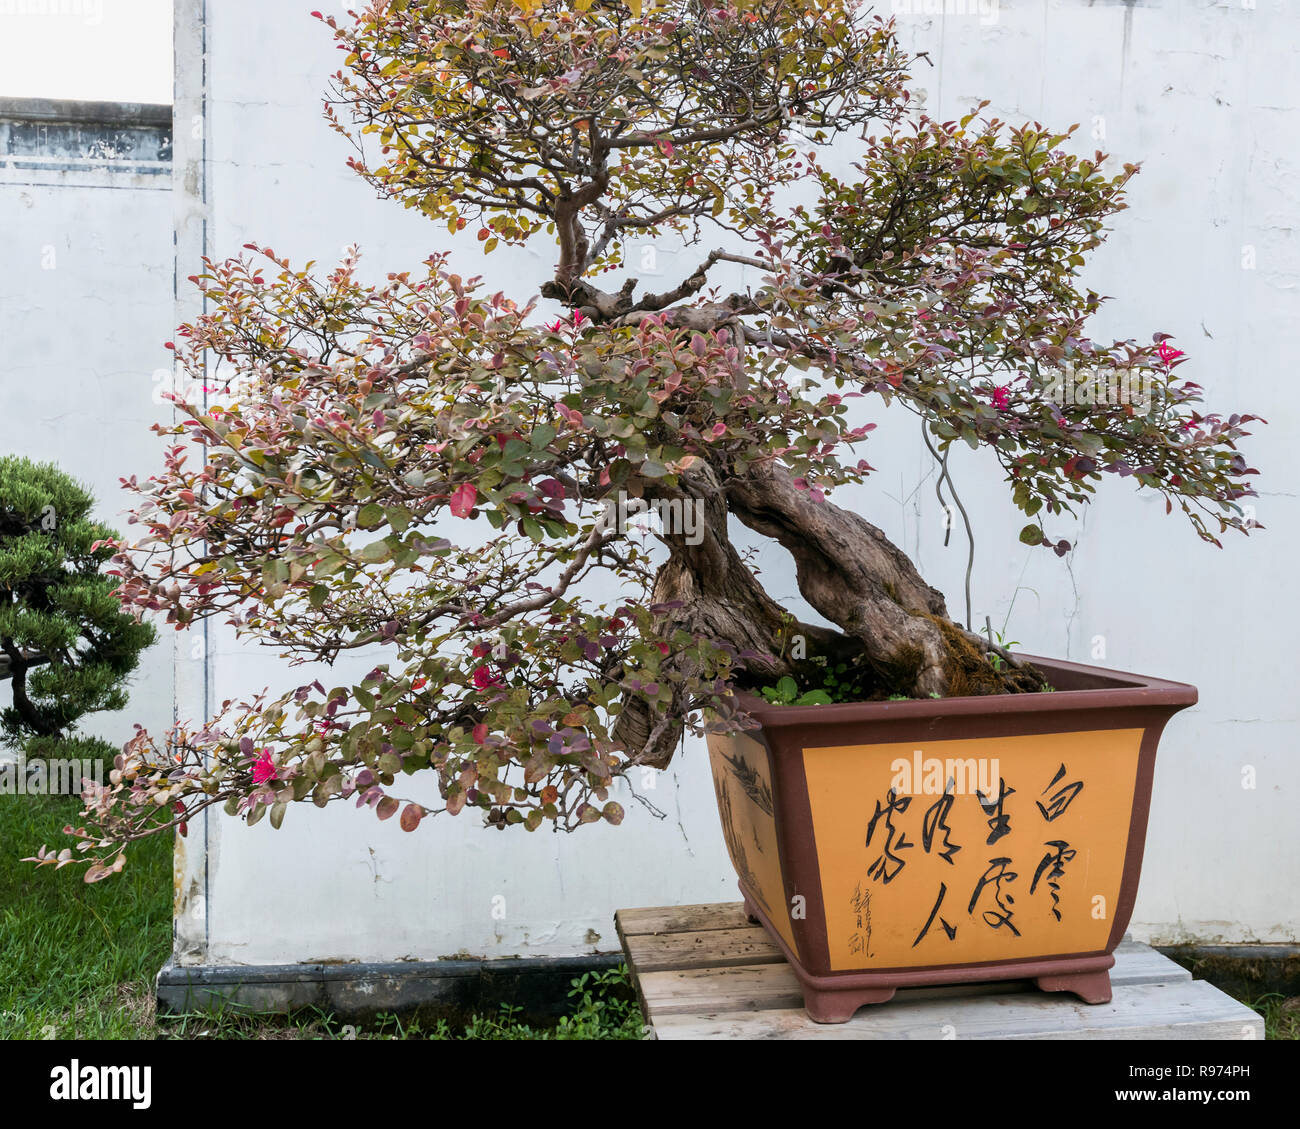 Flowering bonsai tree, Bao Family Garden, Shexian, Anhui, China Stock Photo